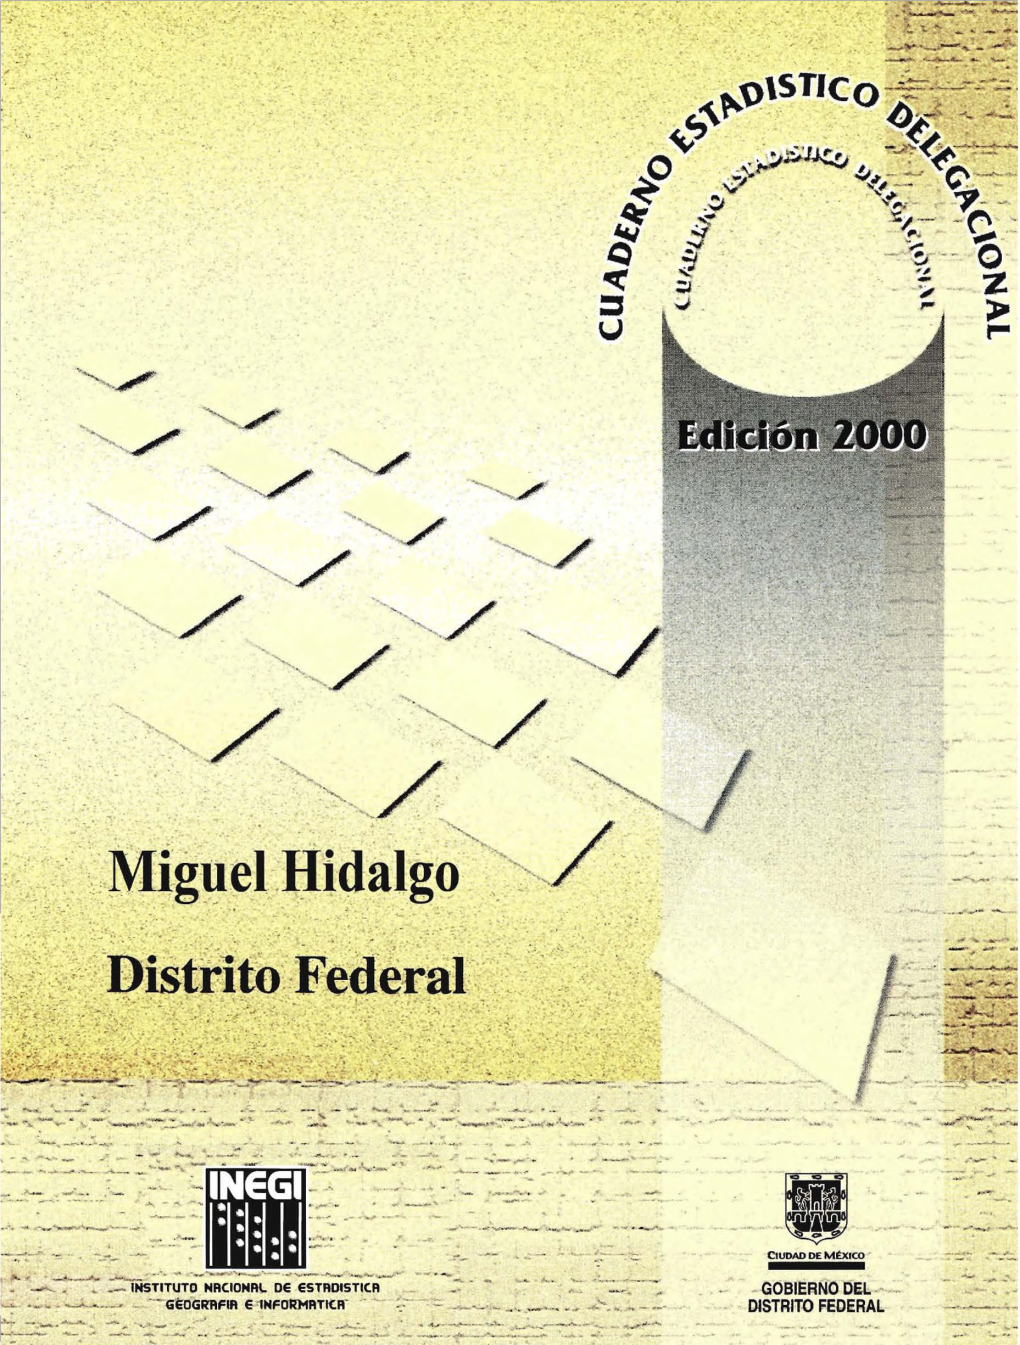 Miguel Hidalgo Distrito Federal